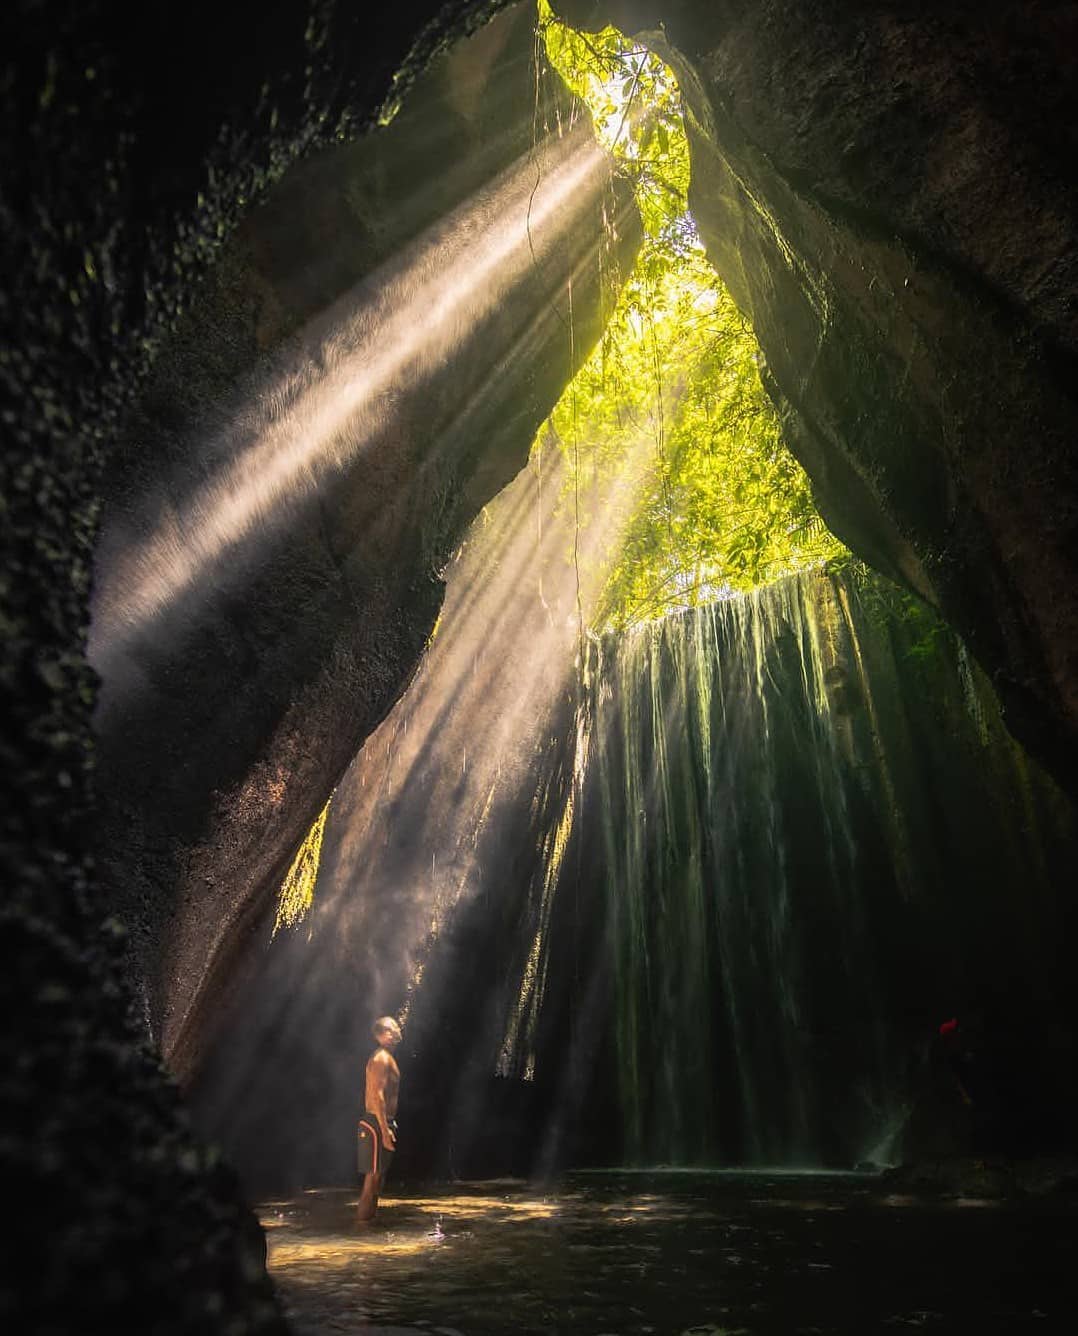 Waterfalls in Bali; Tukad Cepung Waterfall